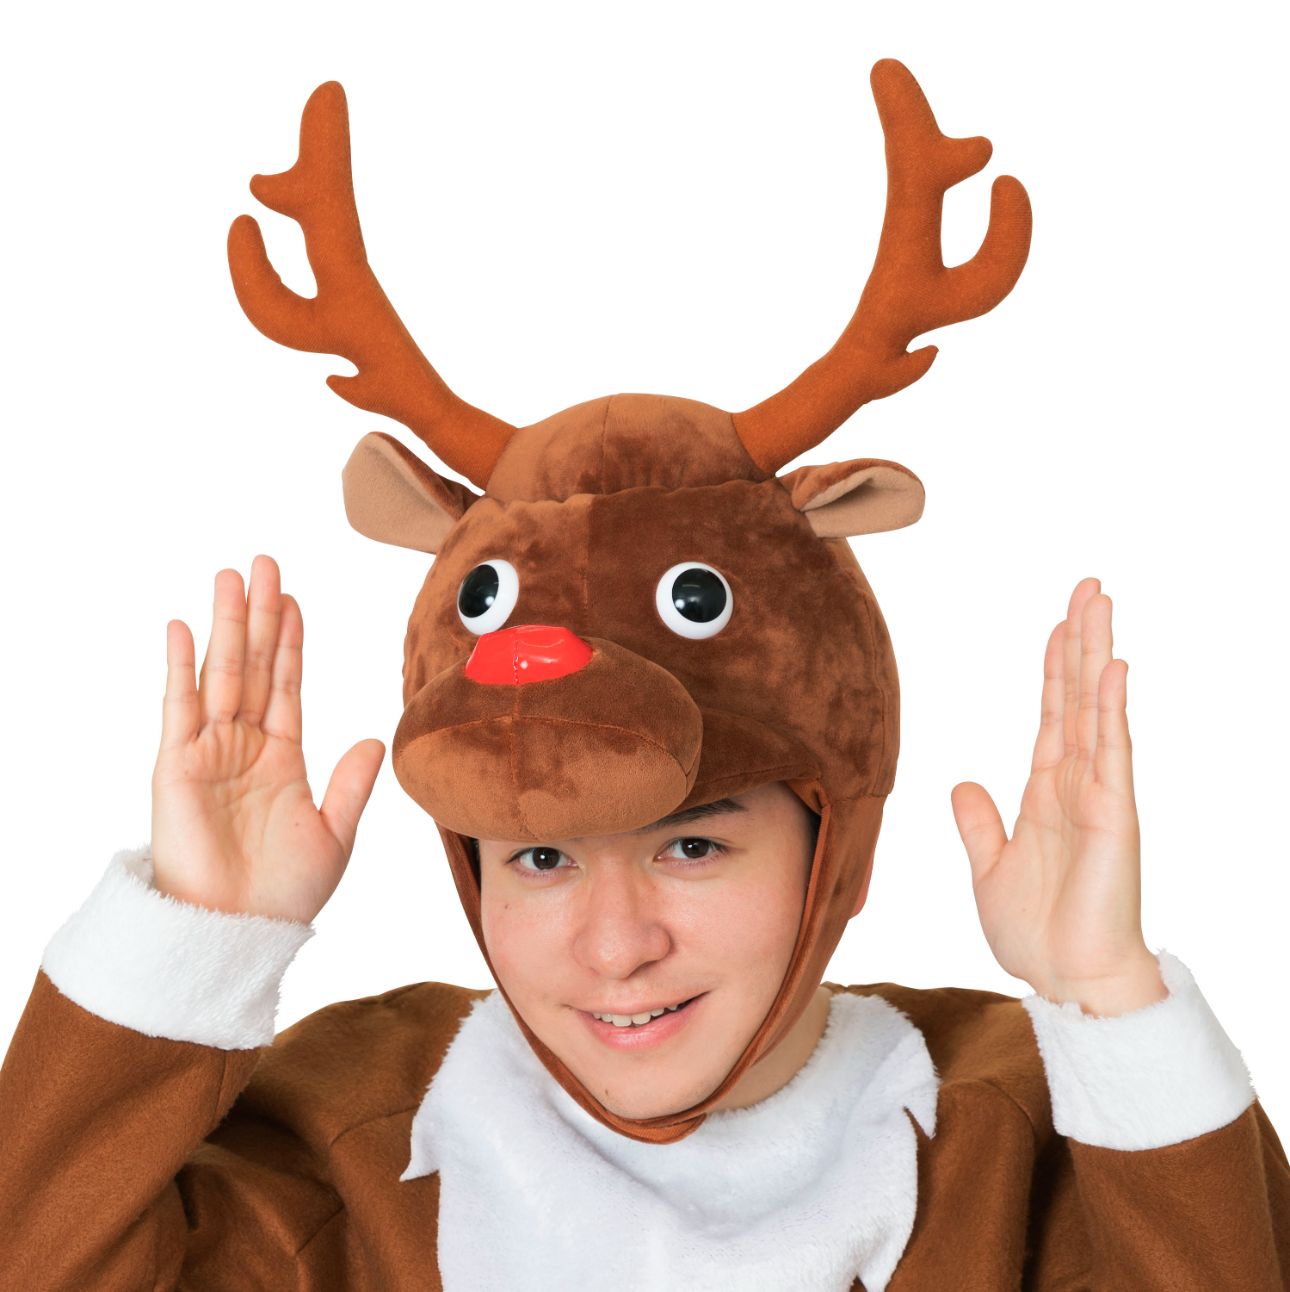 コミカルトナカイかぶりもの 面白 お笑い 簡易仮装 お手軽 クリスマス